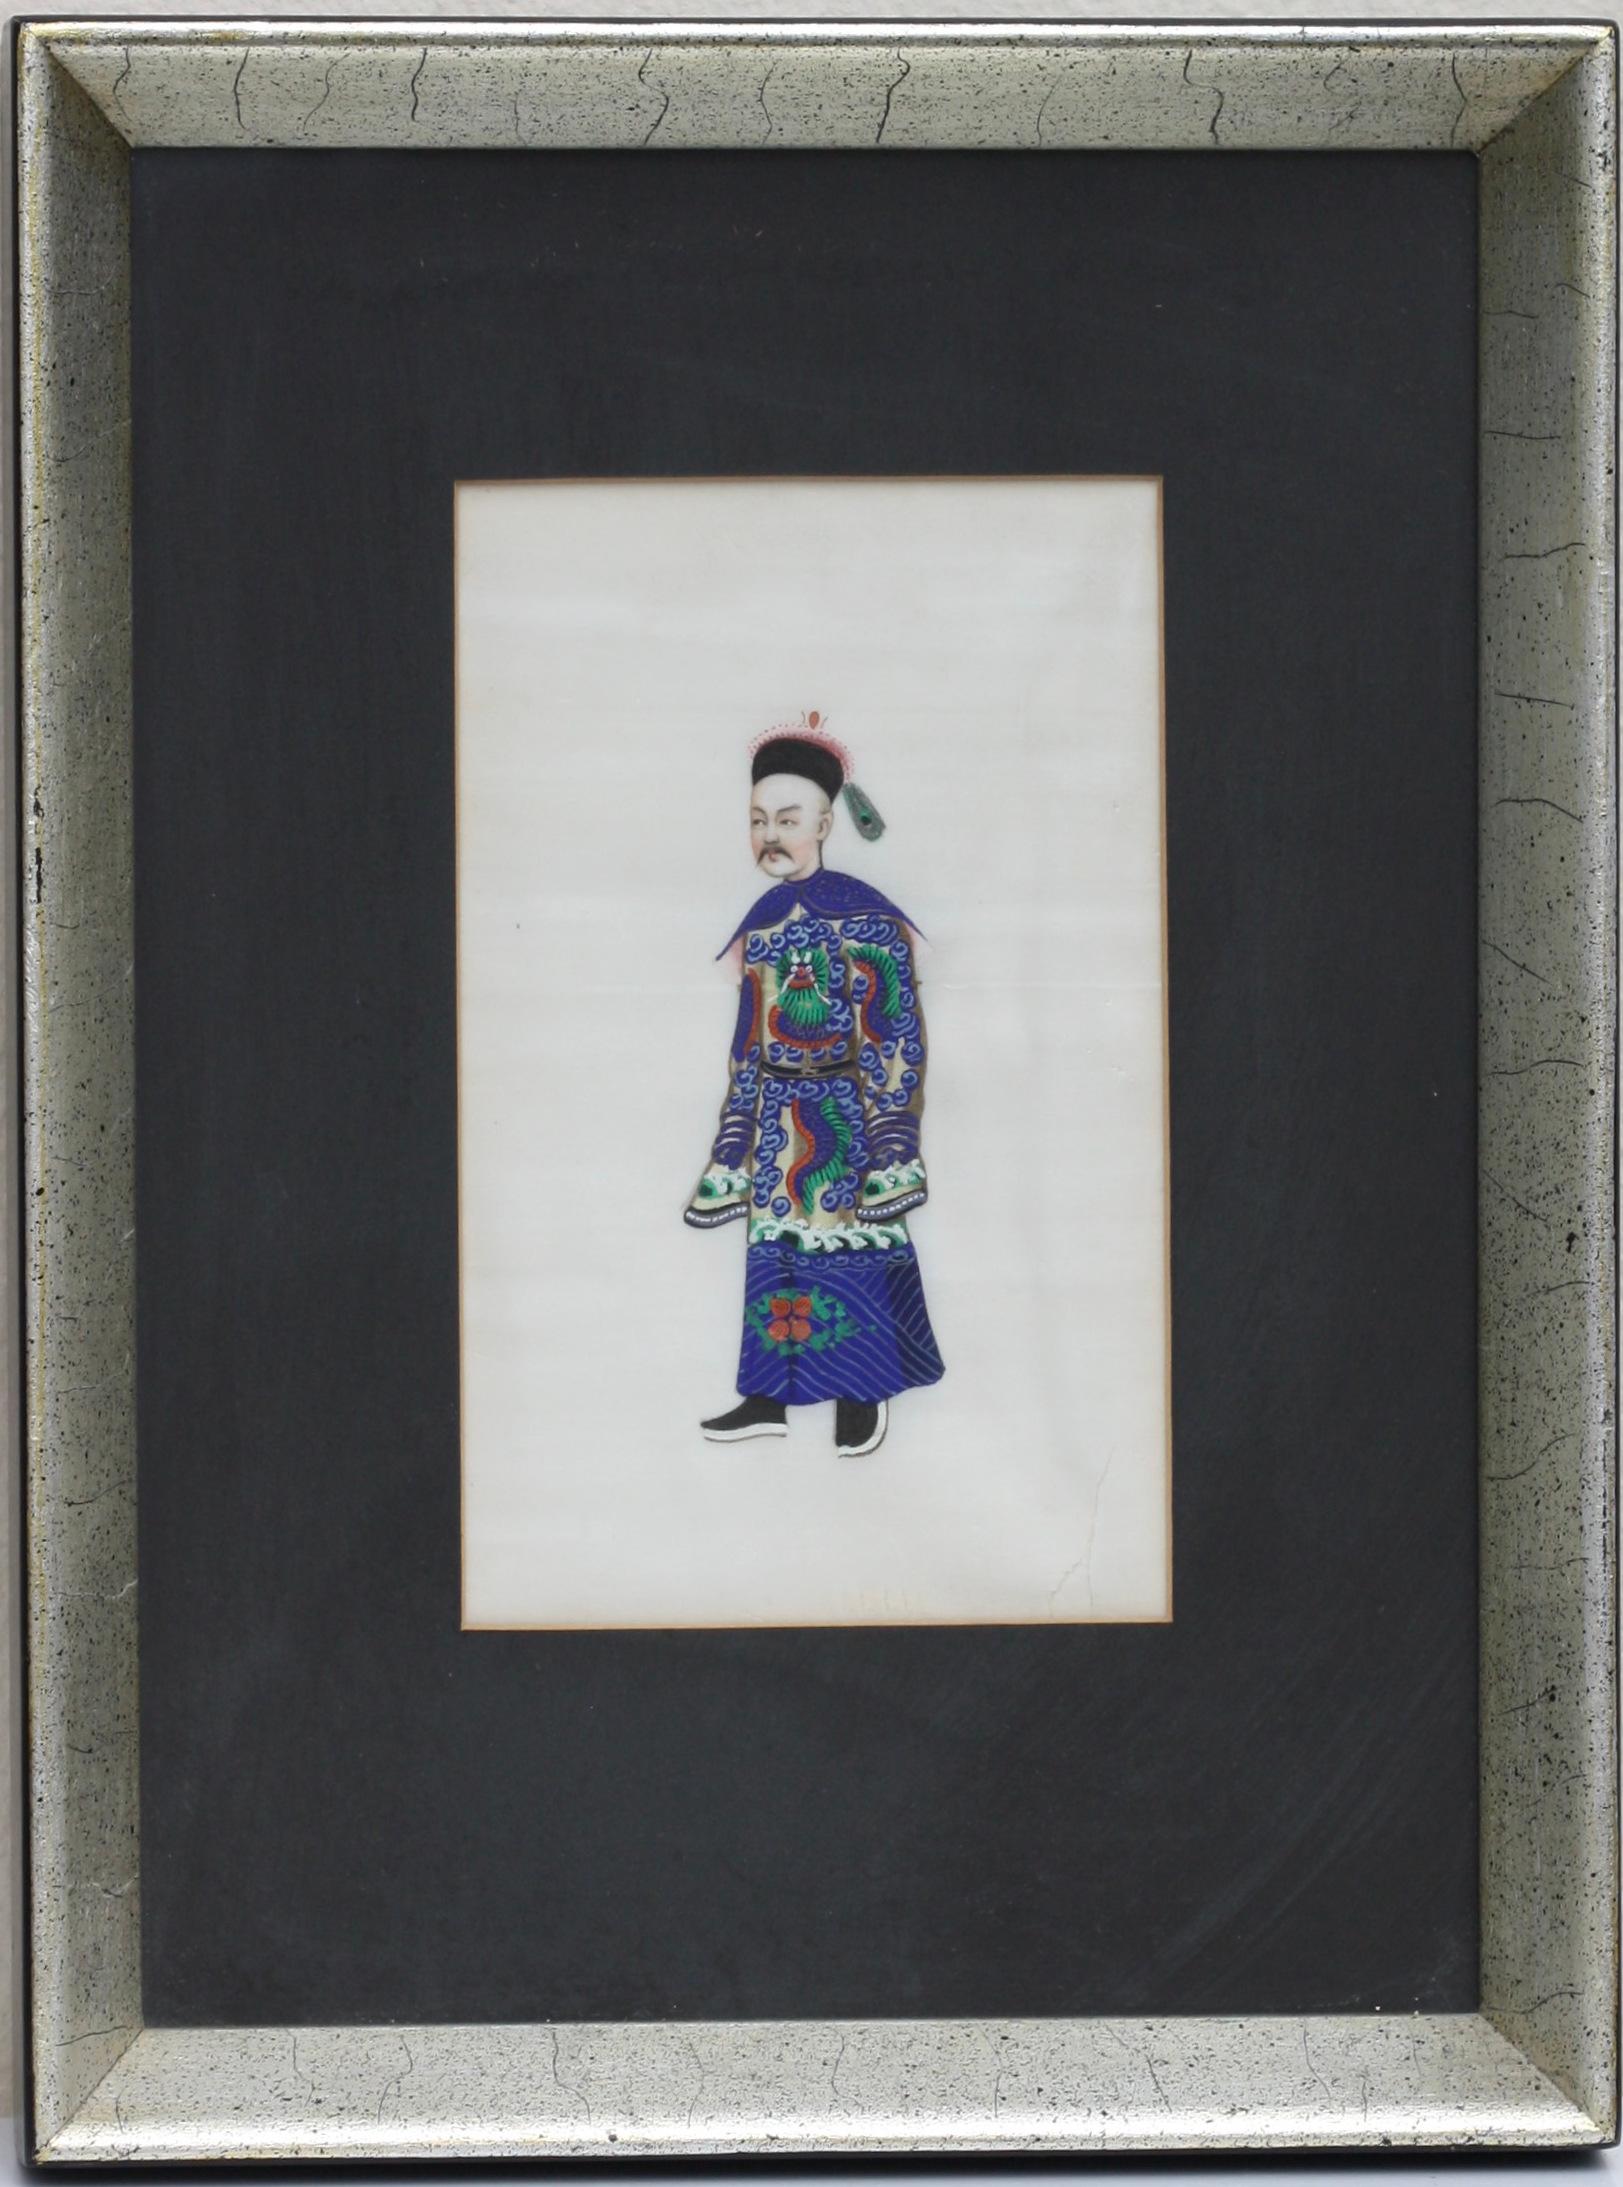 Trois aquarelles chinoises 
19ème siècle
chacune titrée au verso
Mandarin inférieur
Le gouverneur général, sa dame
Premier ministre
taille avec cadre
9 par 12 pouces
Provenance :
John Highland
Montclair, N.J.